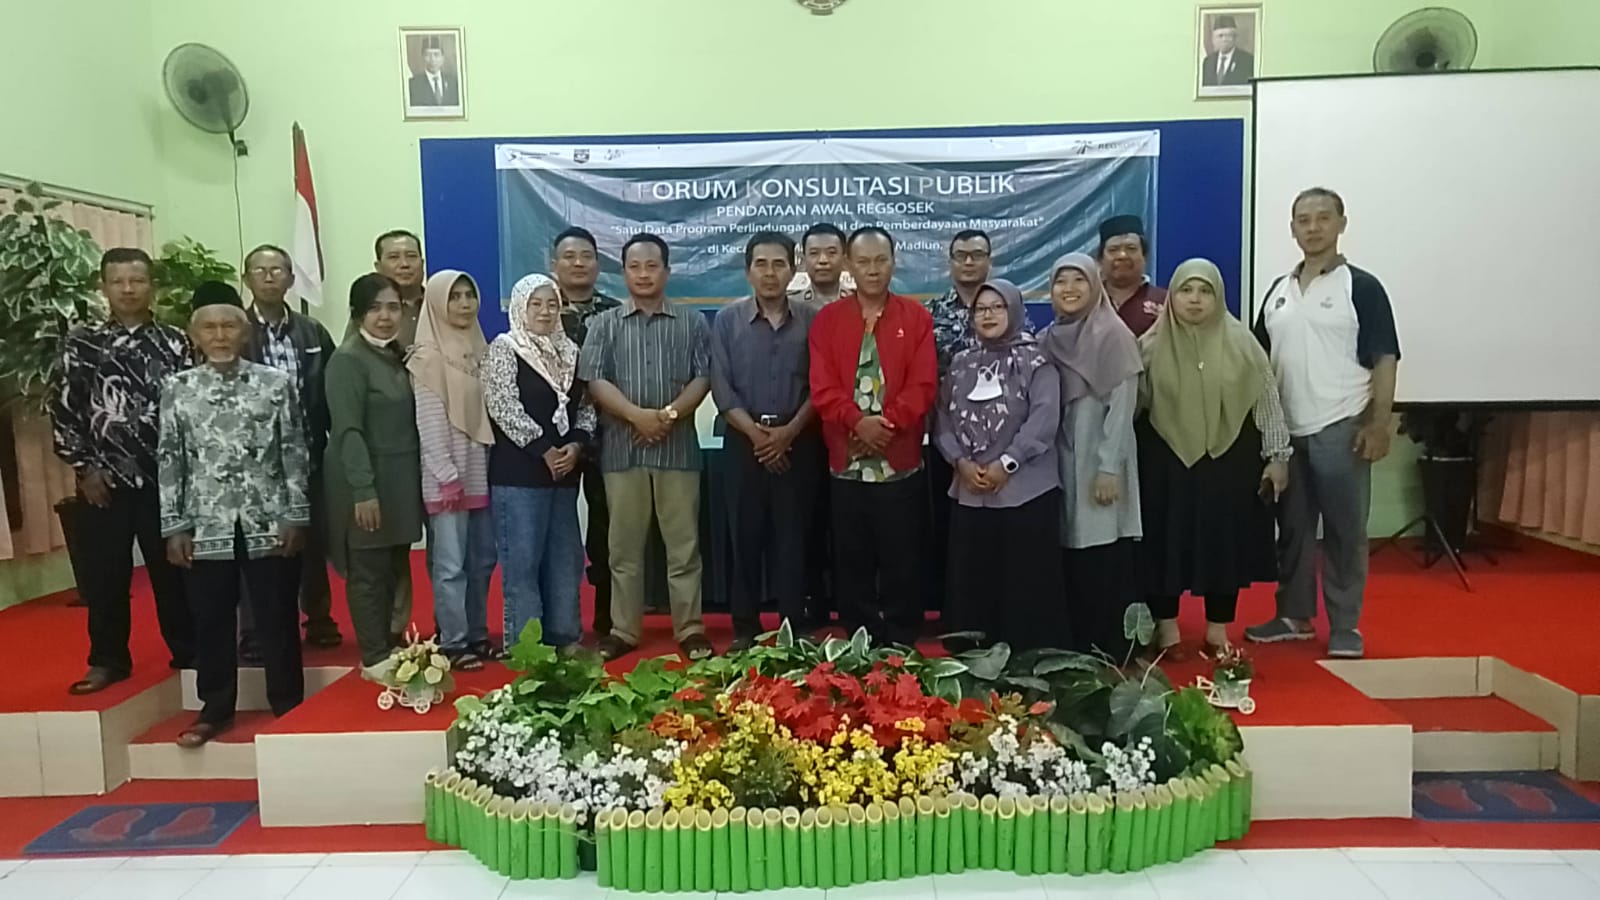 "Forum Konsultasi Publik" REGSOSEK - BPS Kota Madiun